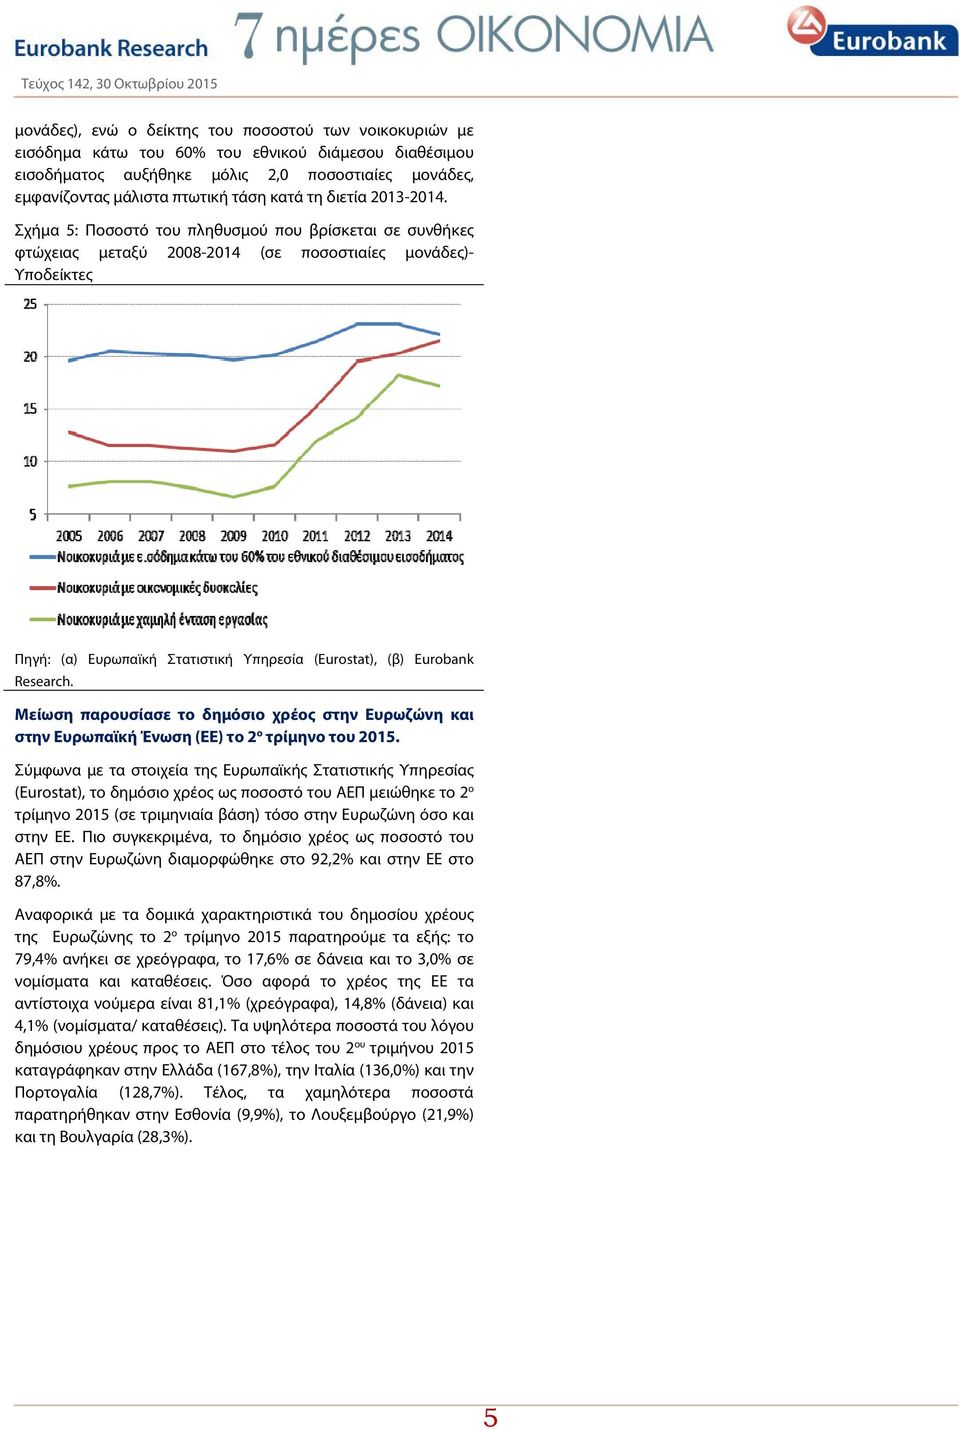 Σχήμα 5: Ποσοστό του πληθυσμού που βρίσκεται σε συνθήκες φτώχειας μεταξύ 2008-2014 (σε ποσοστιαίες μονάδες)- Υποδείκτες Πηγή: (α) Ευρωπαϊκή Στατιστική Υπηρεσία (Eurostat), (β) Eurobank Research.